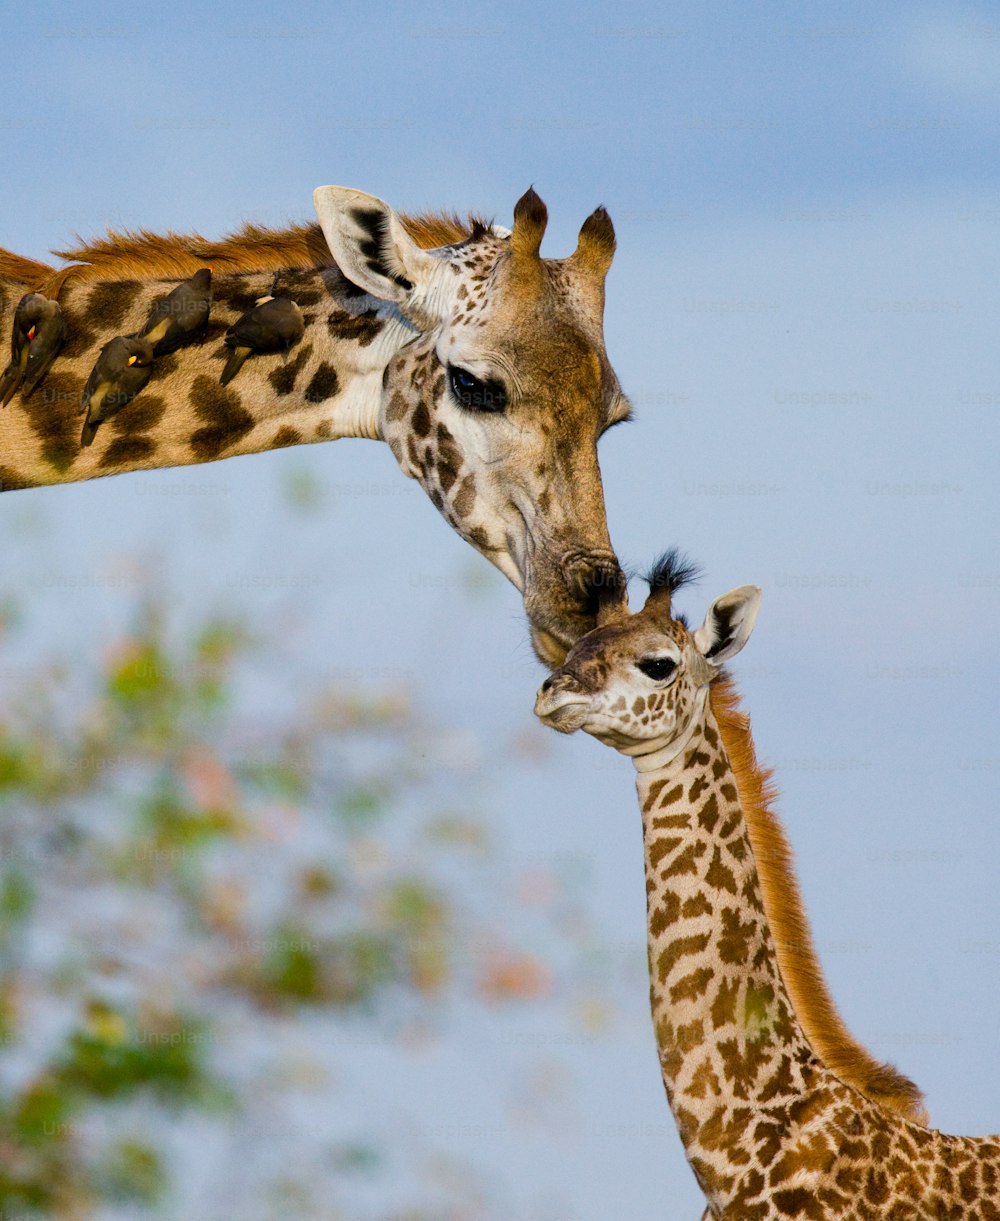 Giraffa femmina con un cucciolo nella savana. Kenia. Tanzania. Africa orientale. Un'ottima illustrazione.